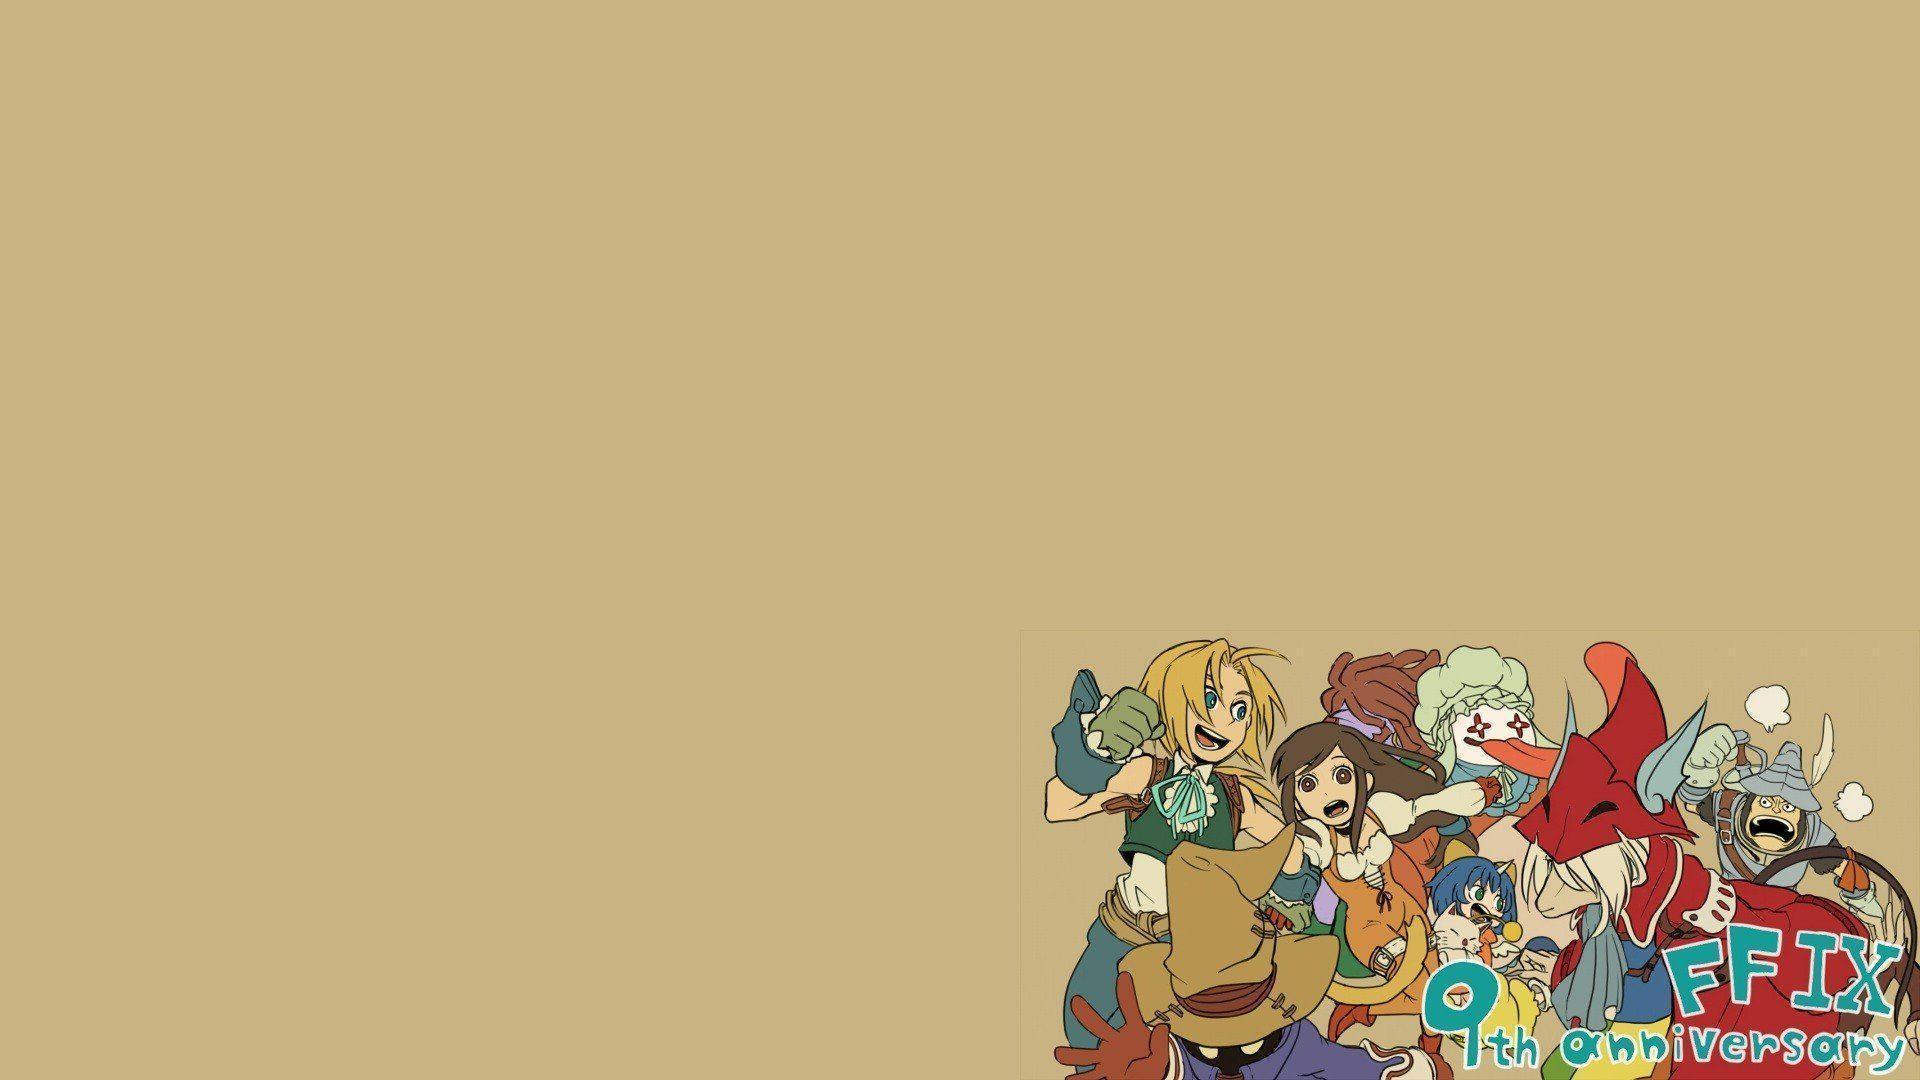 Final Fantasy IX 1080p Wallpaper, Final Fantasy IX, Game